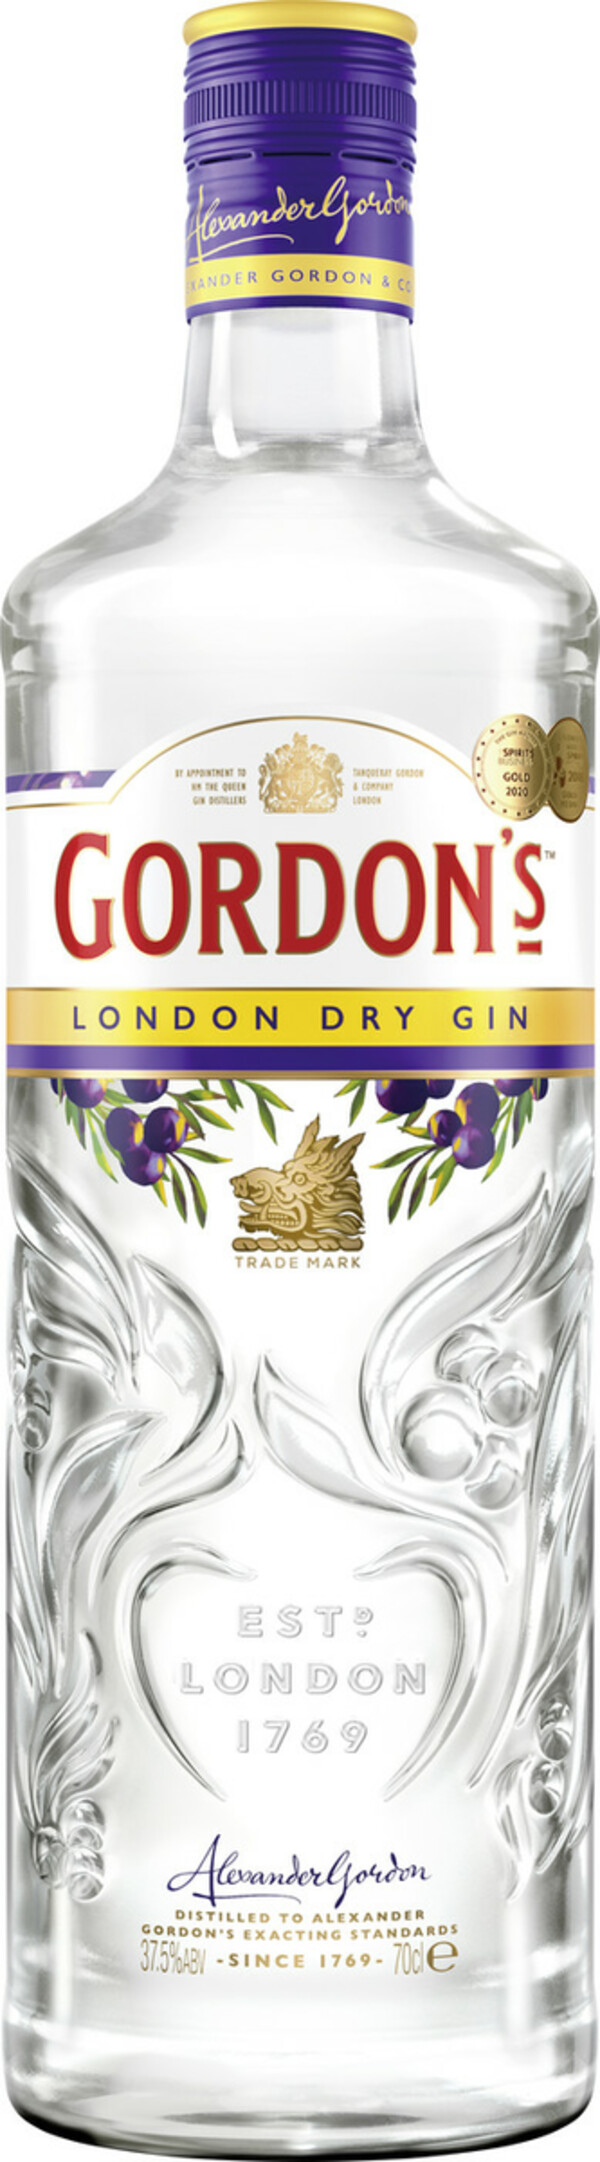 Bild 1 von Gordons London Dry Gin 0,7 ltr